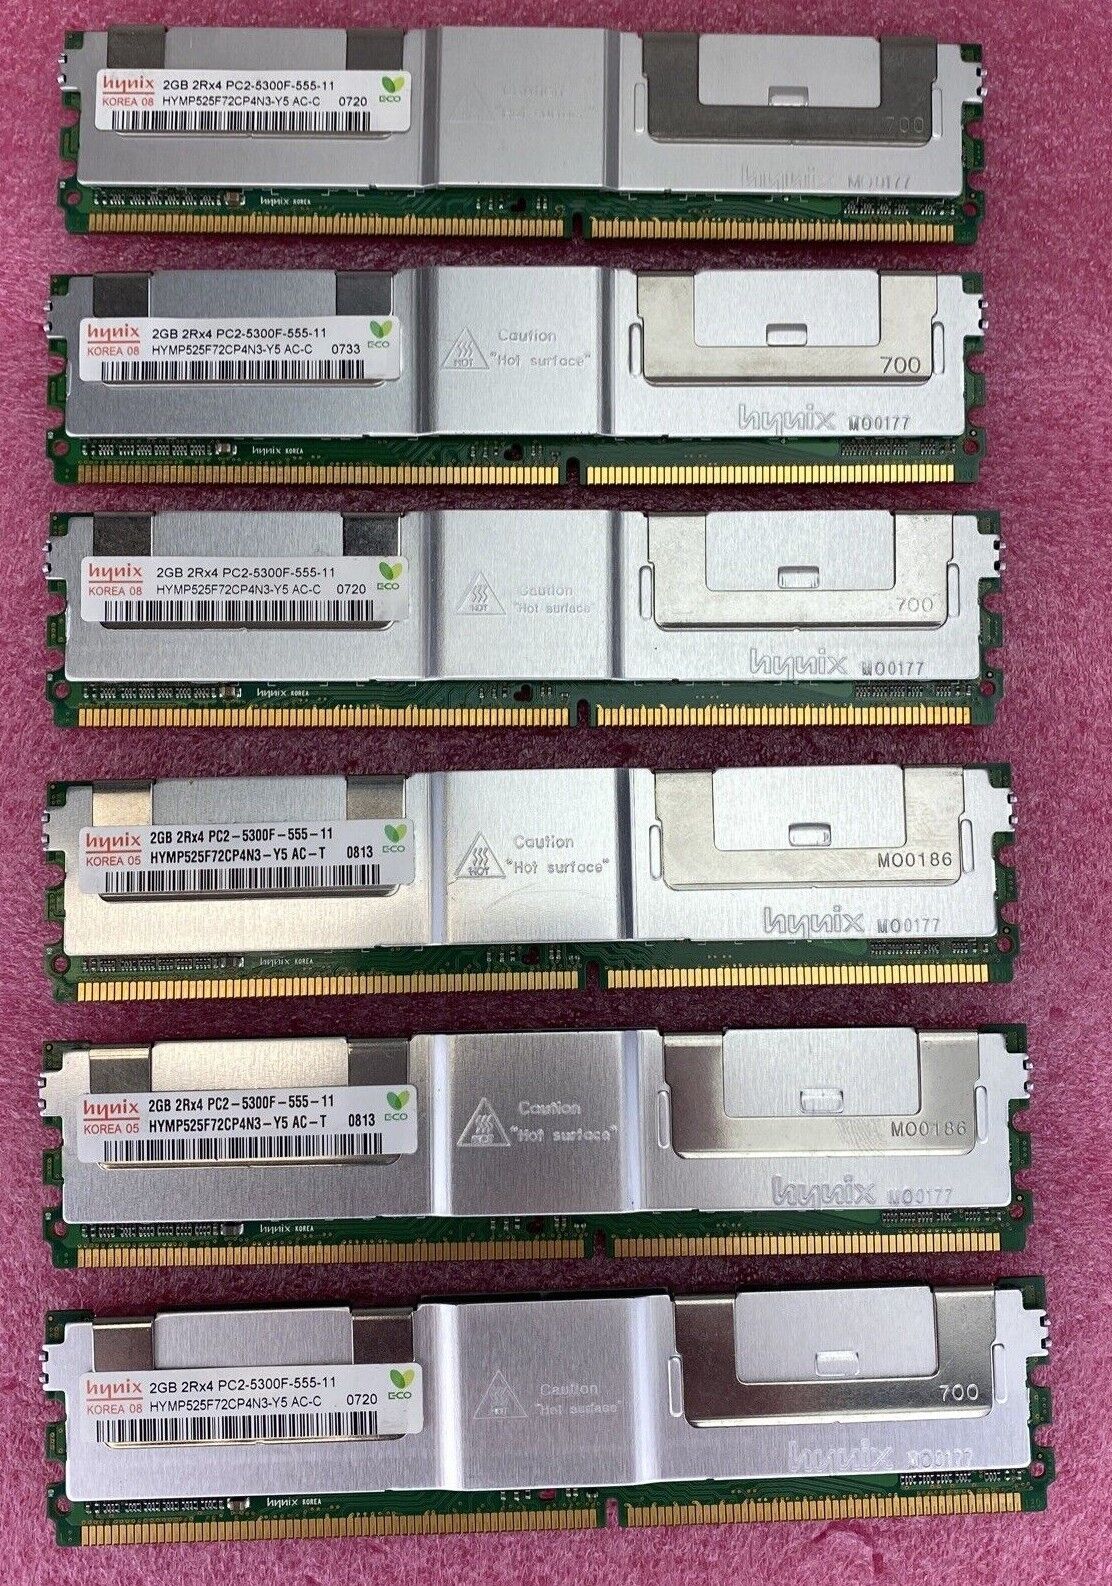 6x 2GB Hynix HYMP525F72CP4N3-Y5 PC2-5300F-555-11 2RX4 ECC REG DIMM RAM